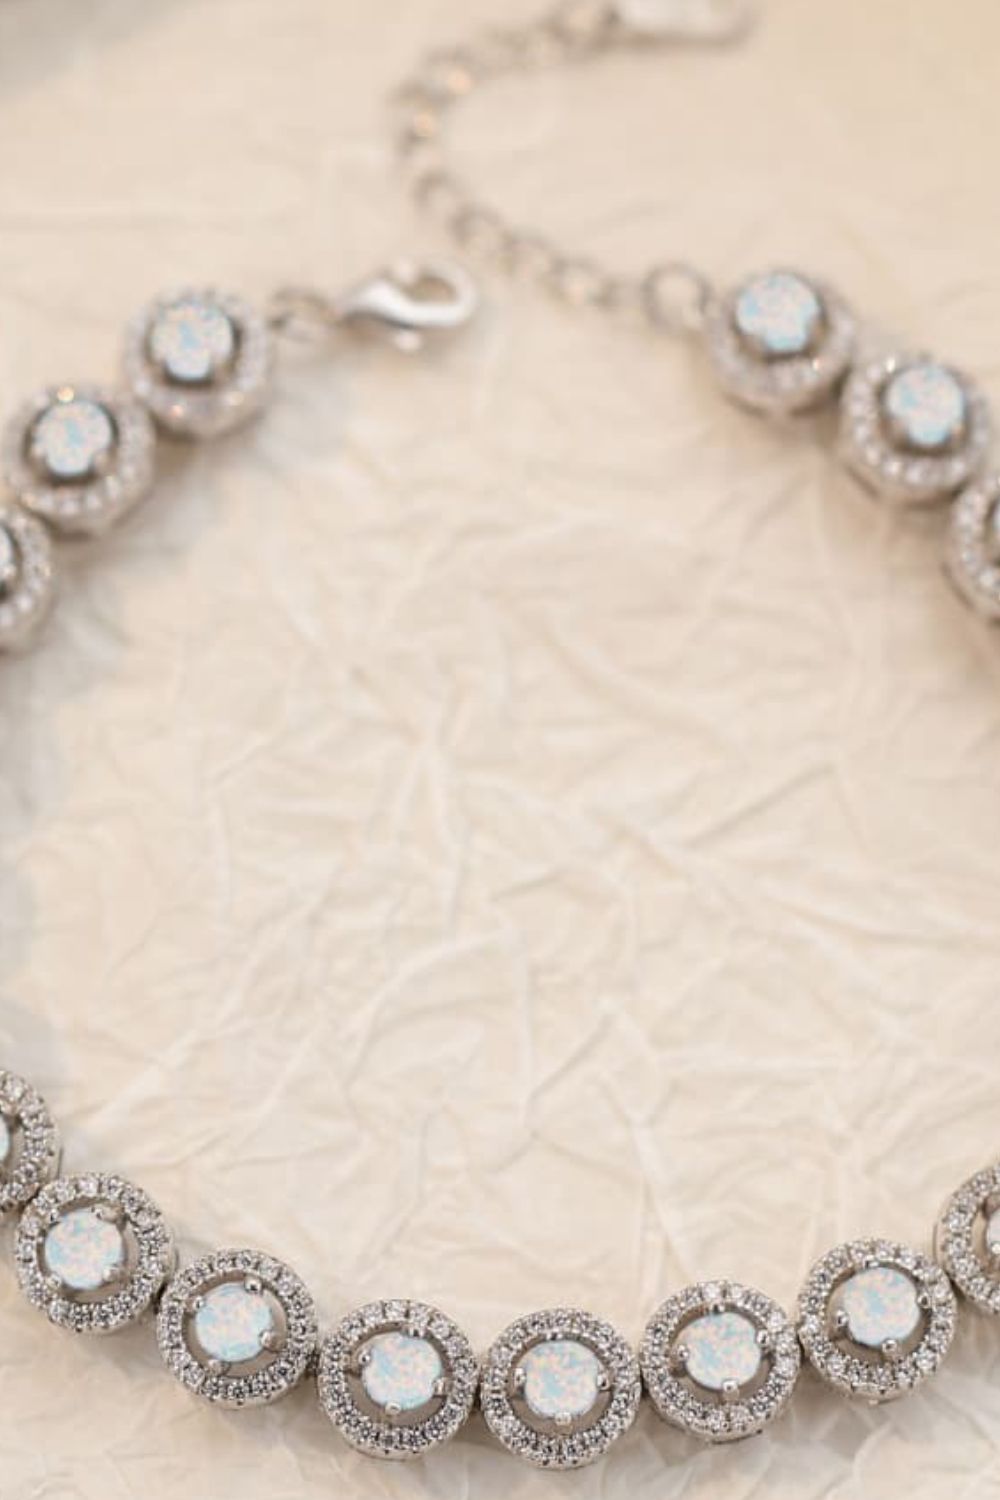 My Own Way Opal Bracelet - Women’s Jewelry - Bracelets - 6 - 2024